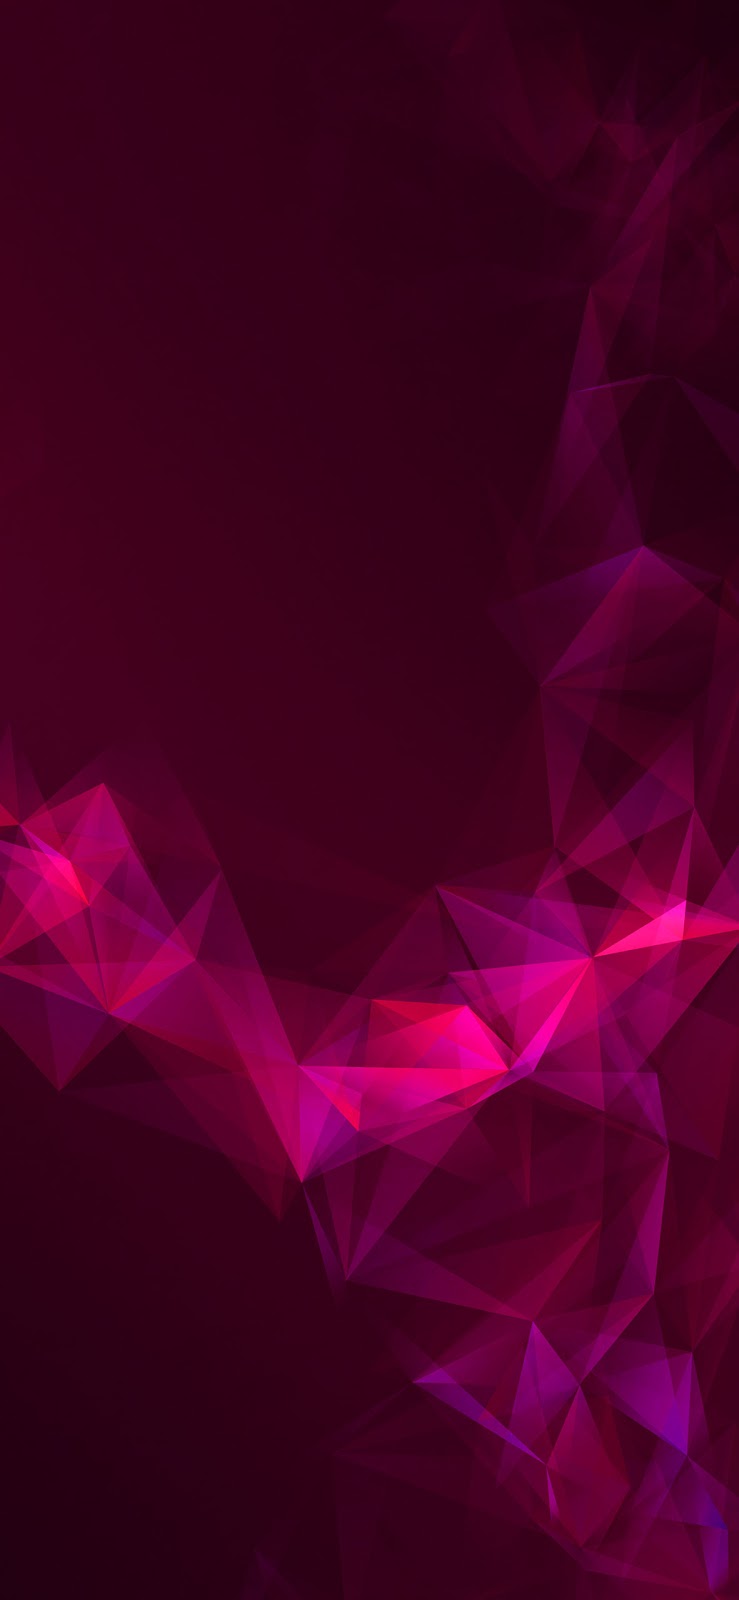 descarga gratuita de fondos de pantalla hd,violeta,rosado,rojo,púrpura,negro